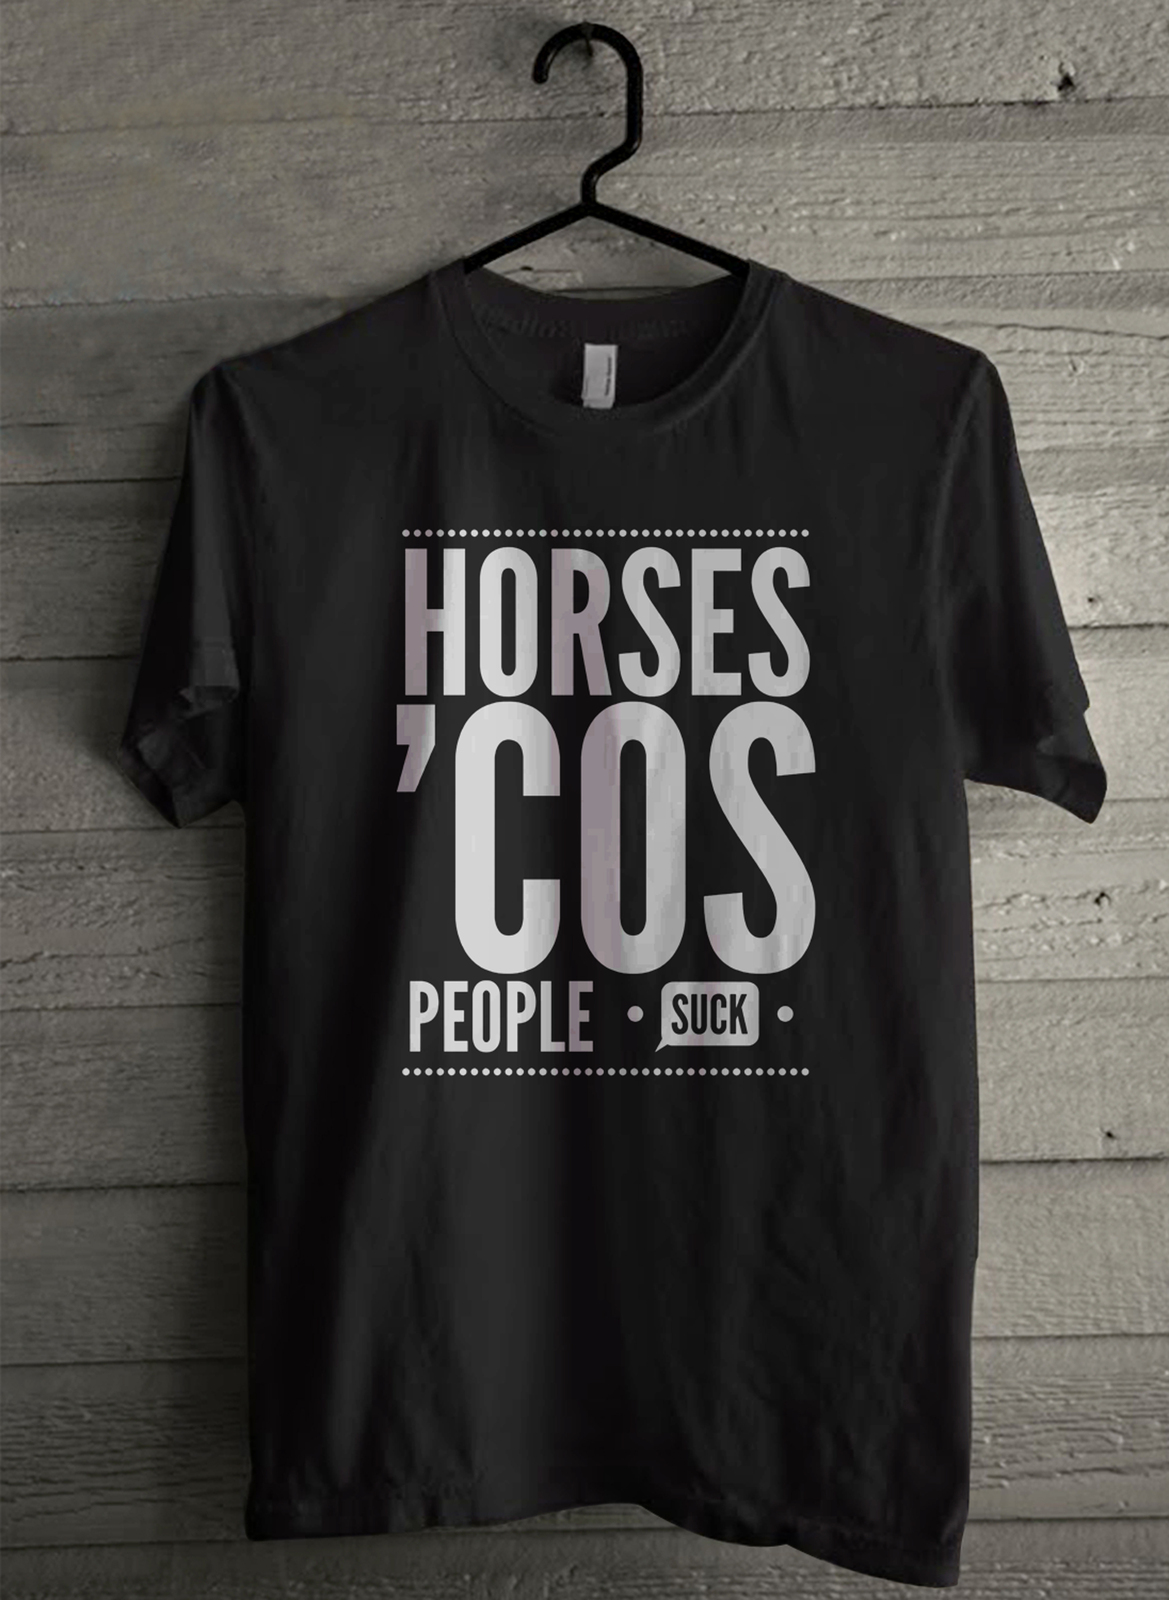 Horses cos people - Custom Men's T-Shirt (4038) - $19.13 - $21.84